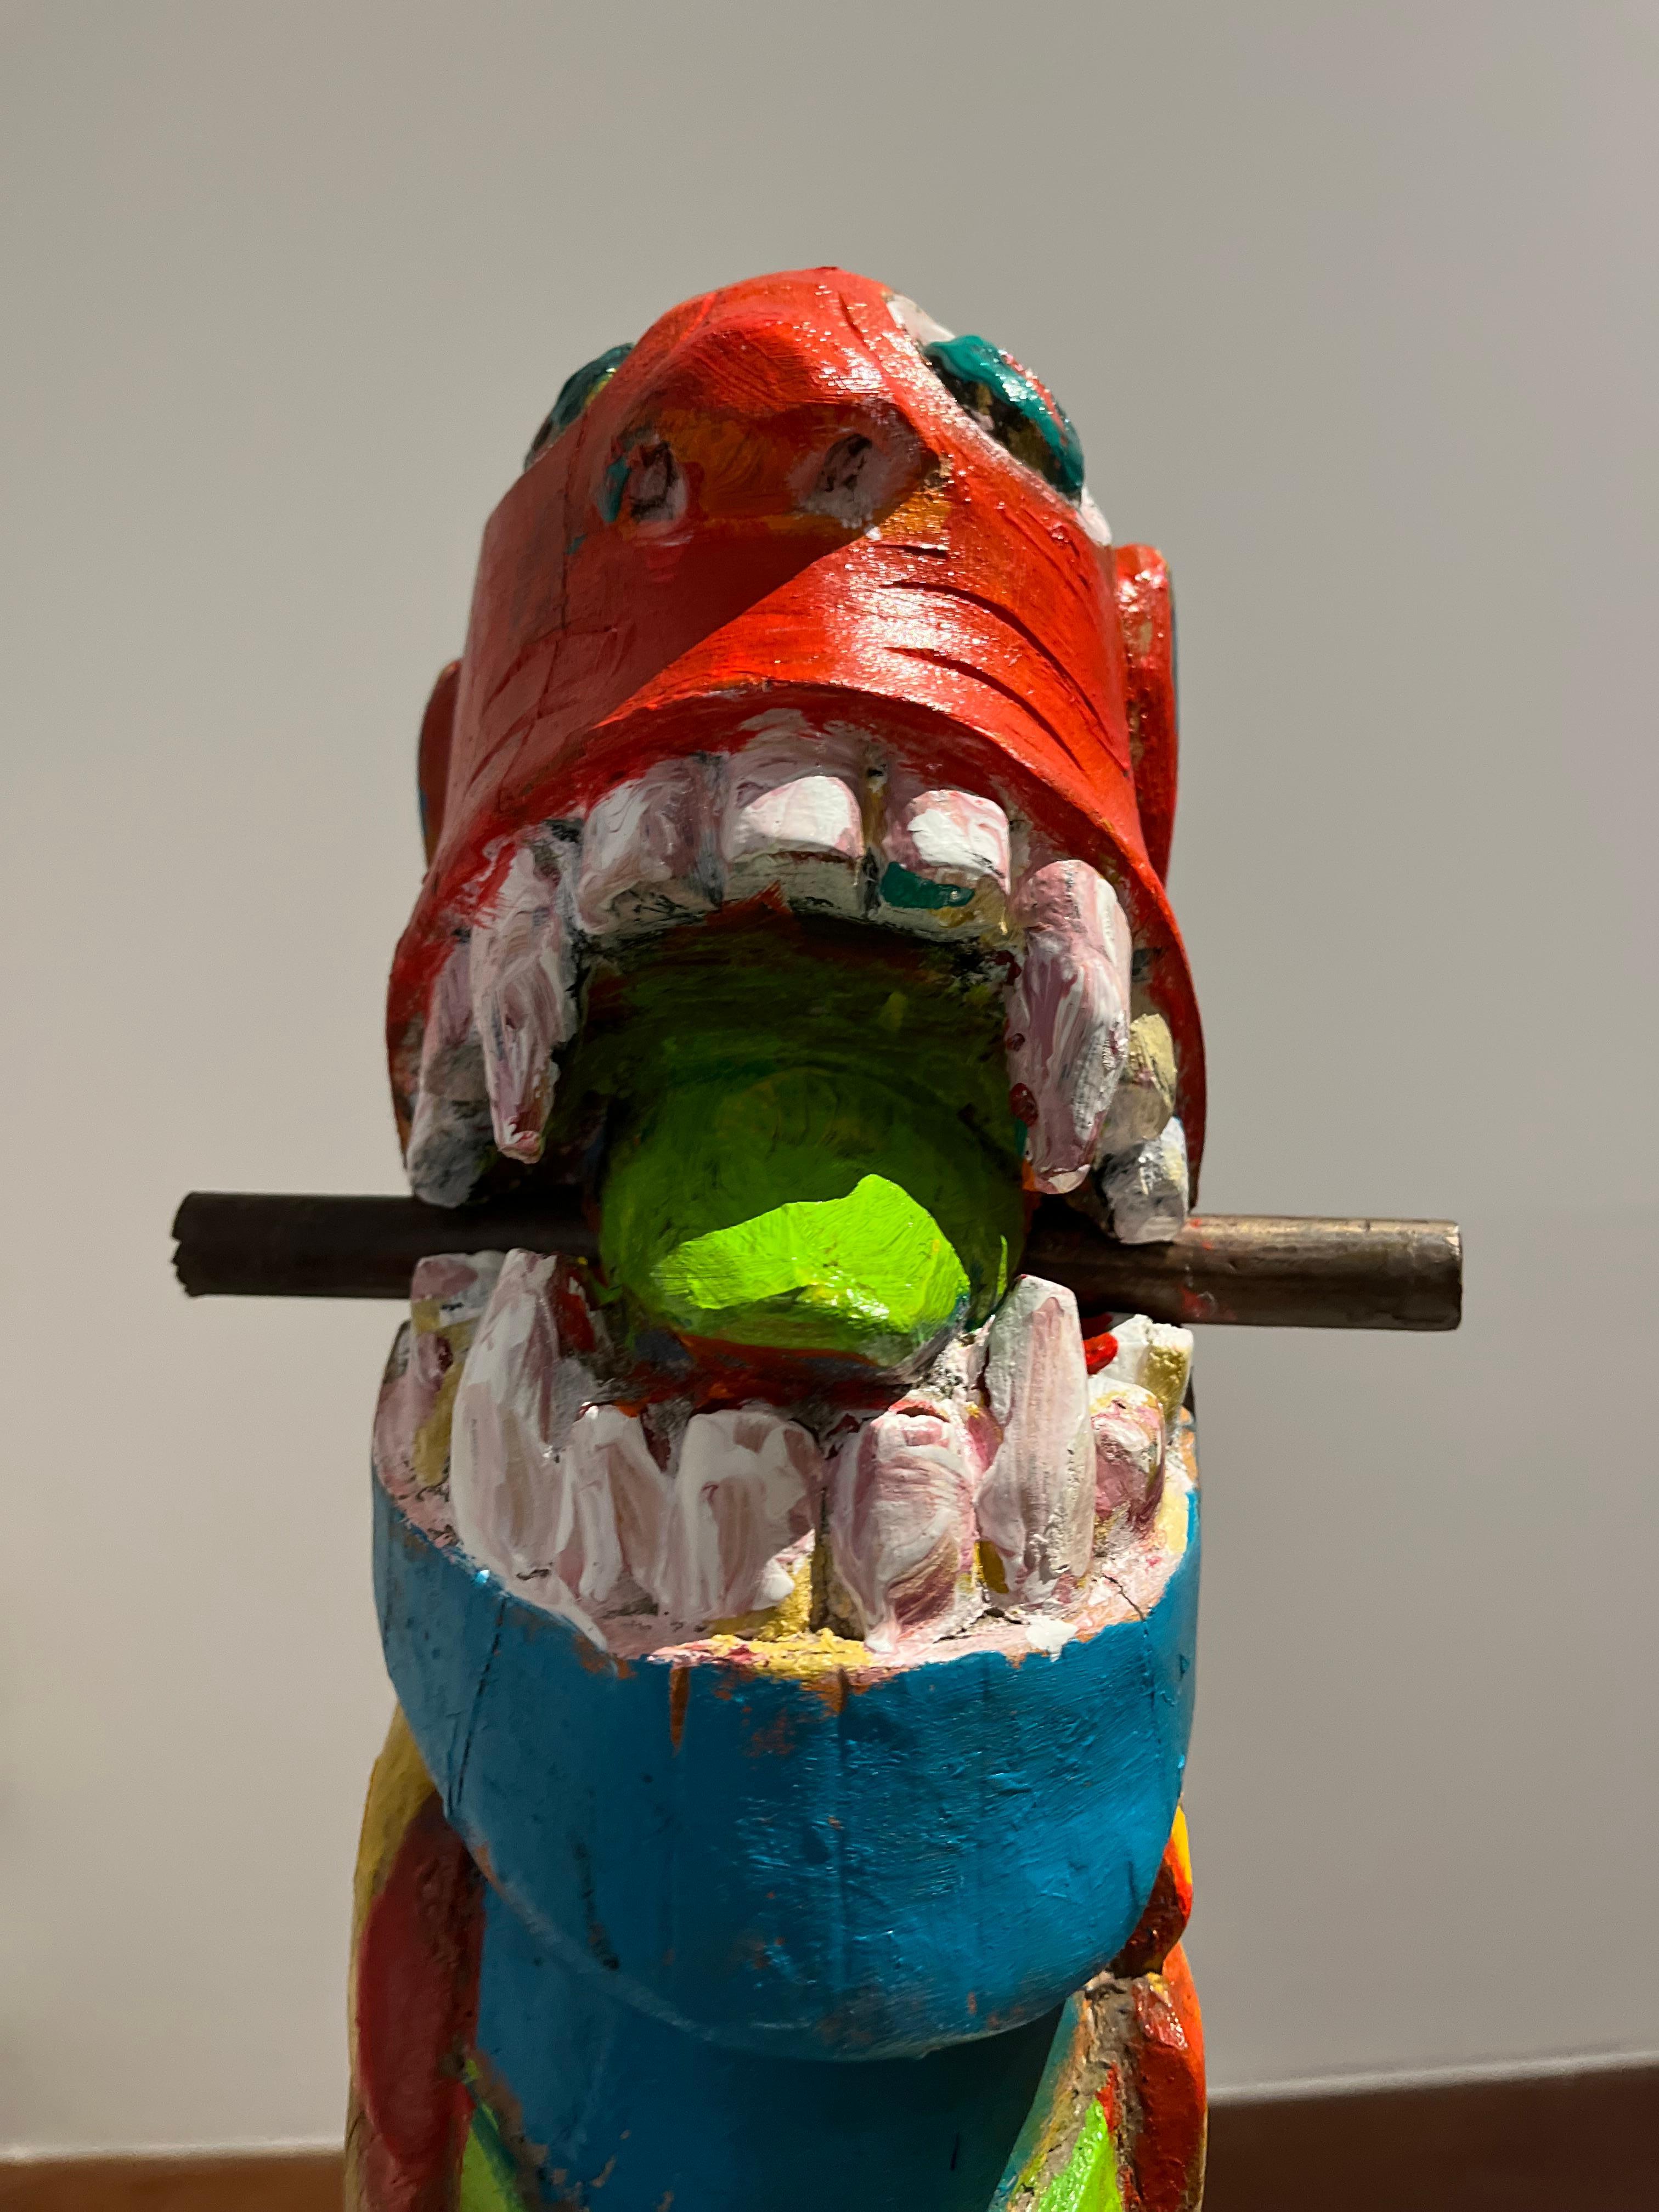 Apropriaçao frei de carranca, Figurative Sculpture. From the Series Sculptures For Sale 4